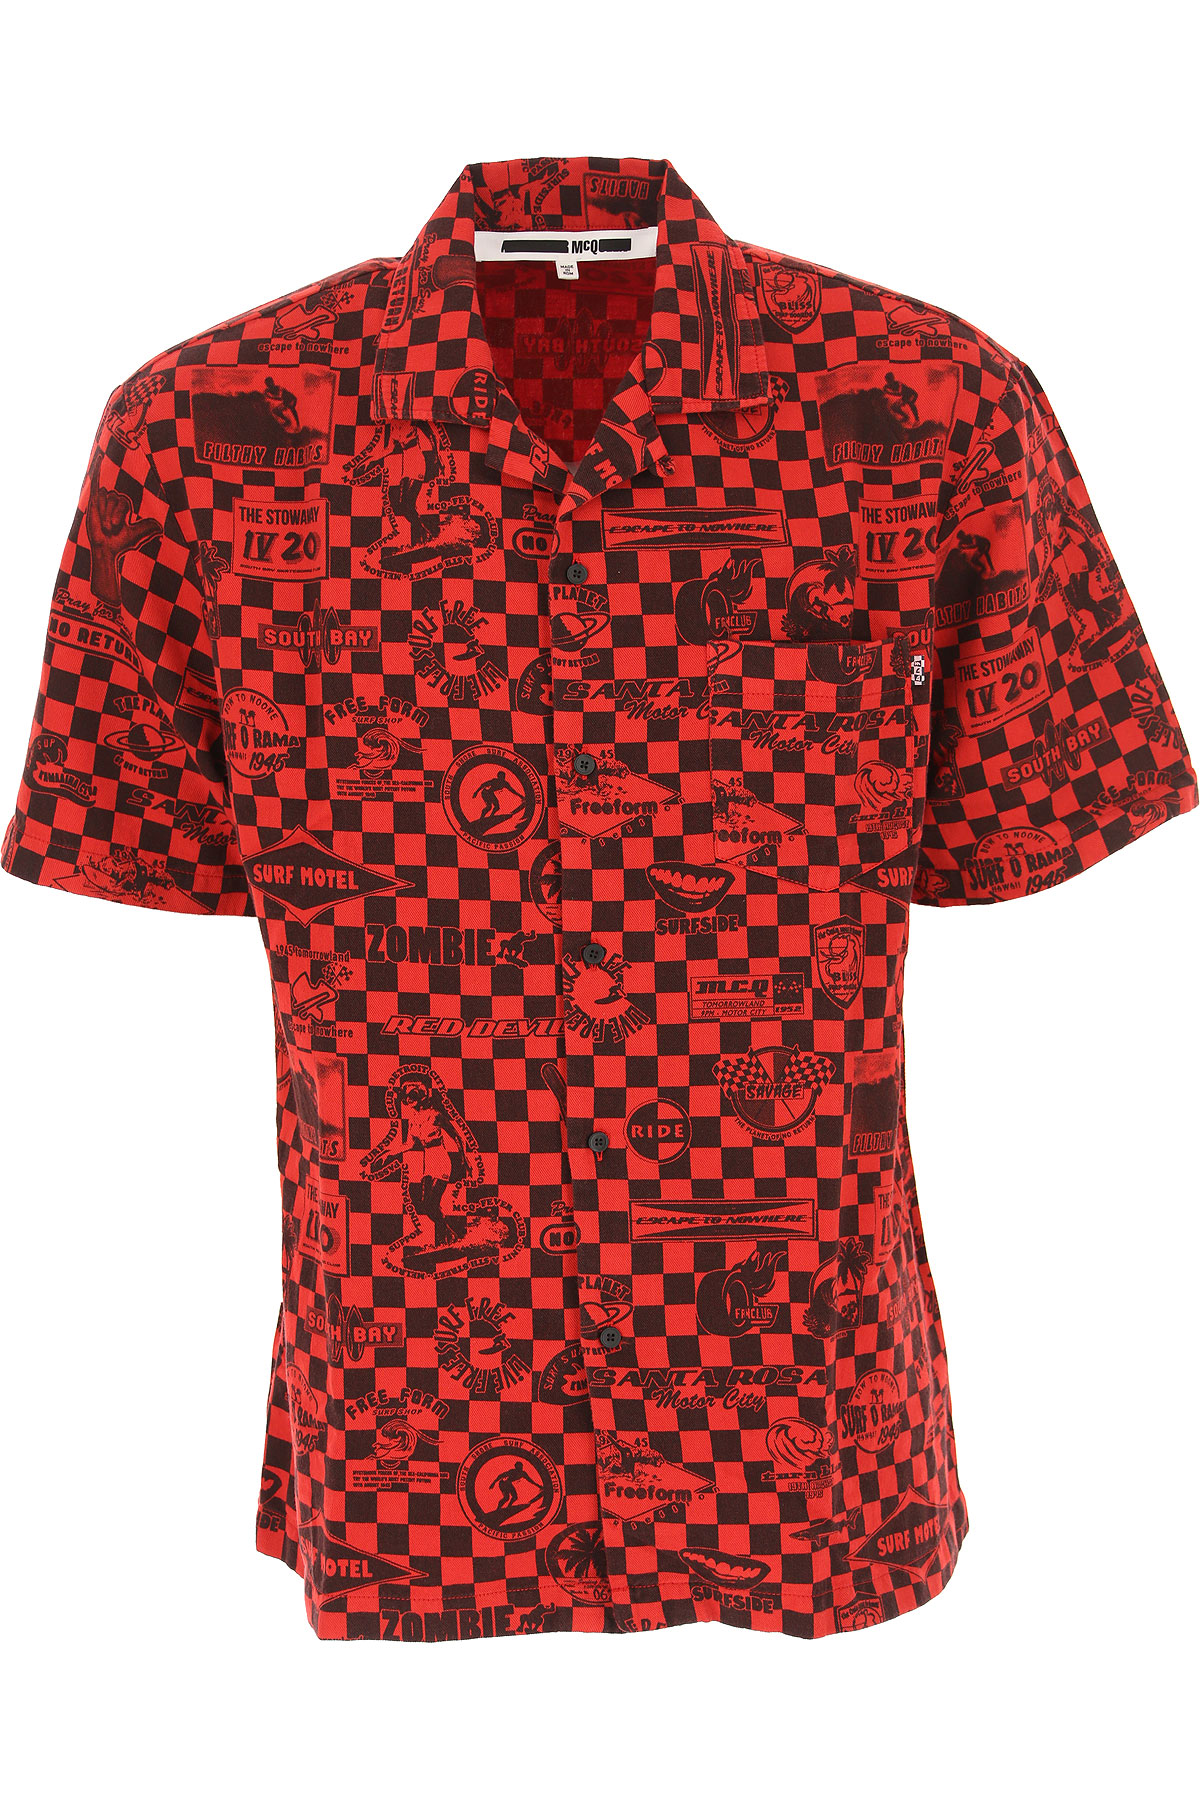 Alexander McQueen Hemde für Herren, Oberhemd Günstig im Outlet Sale, Rot, Baumwolle, 2017, L M S XL